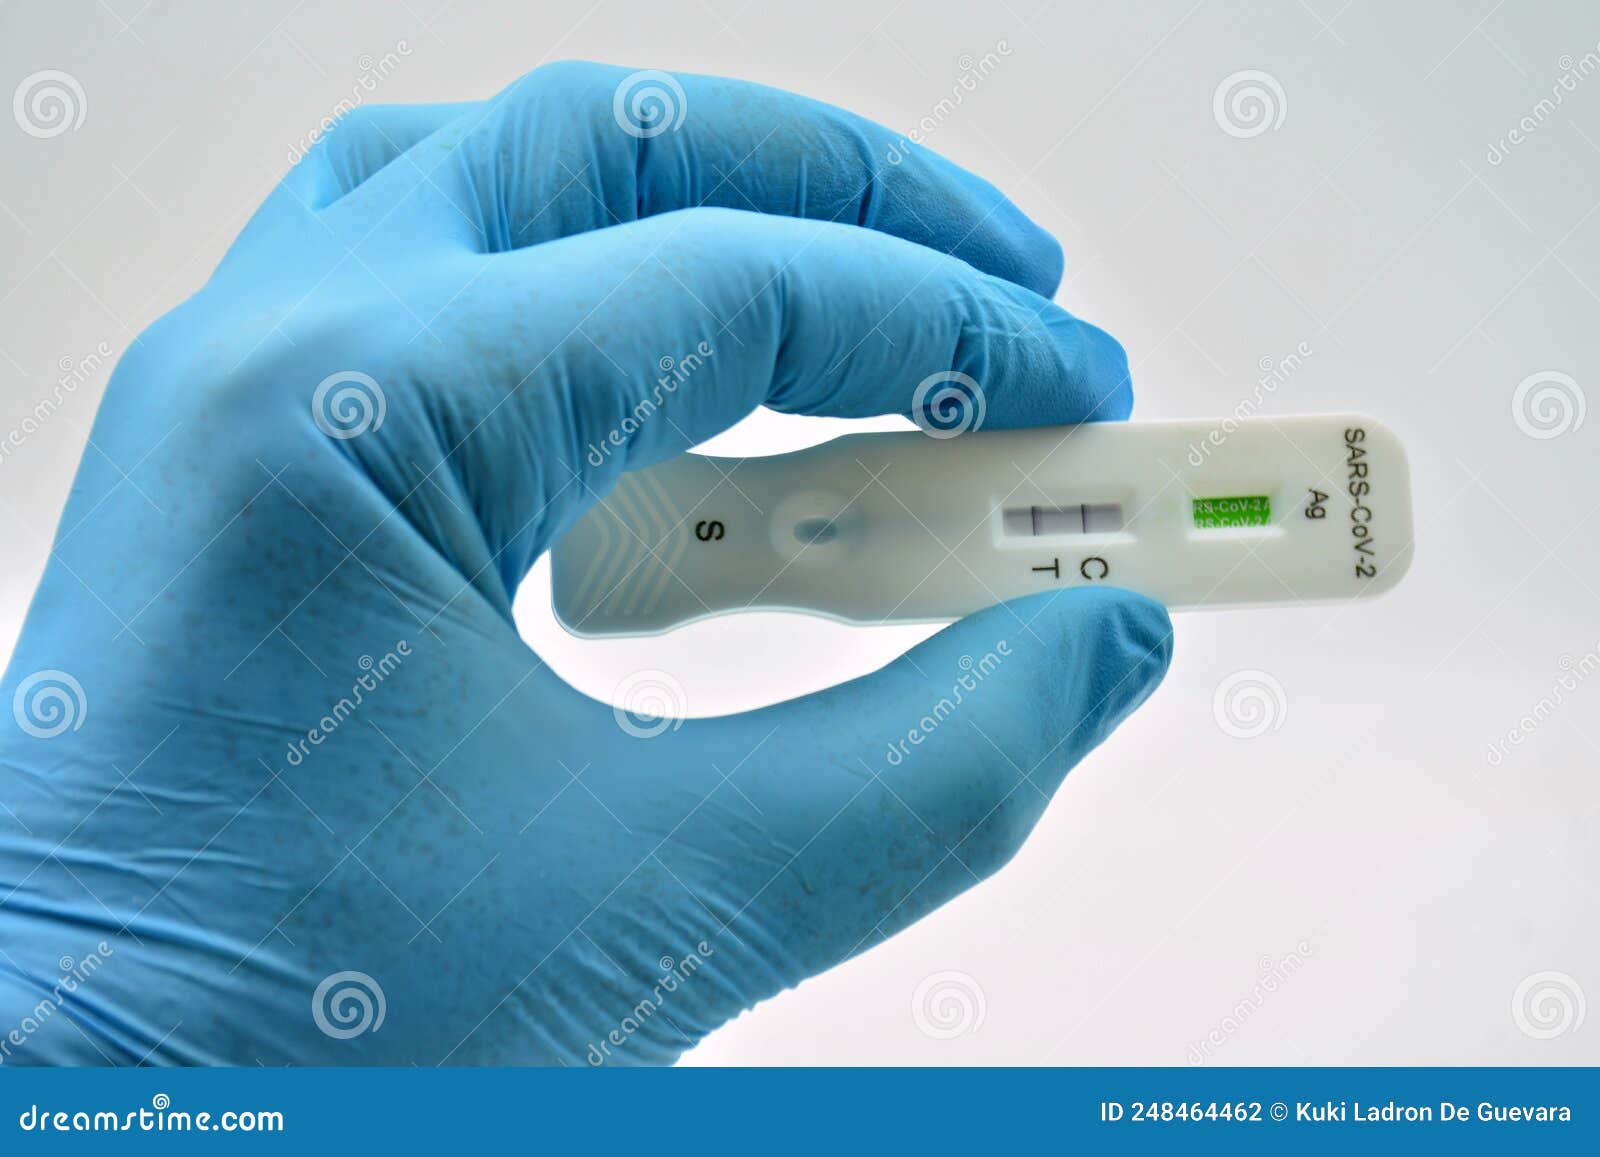 gloved hand holding an antigen test